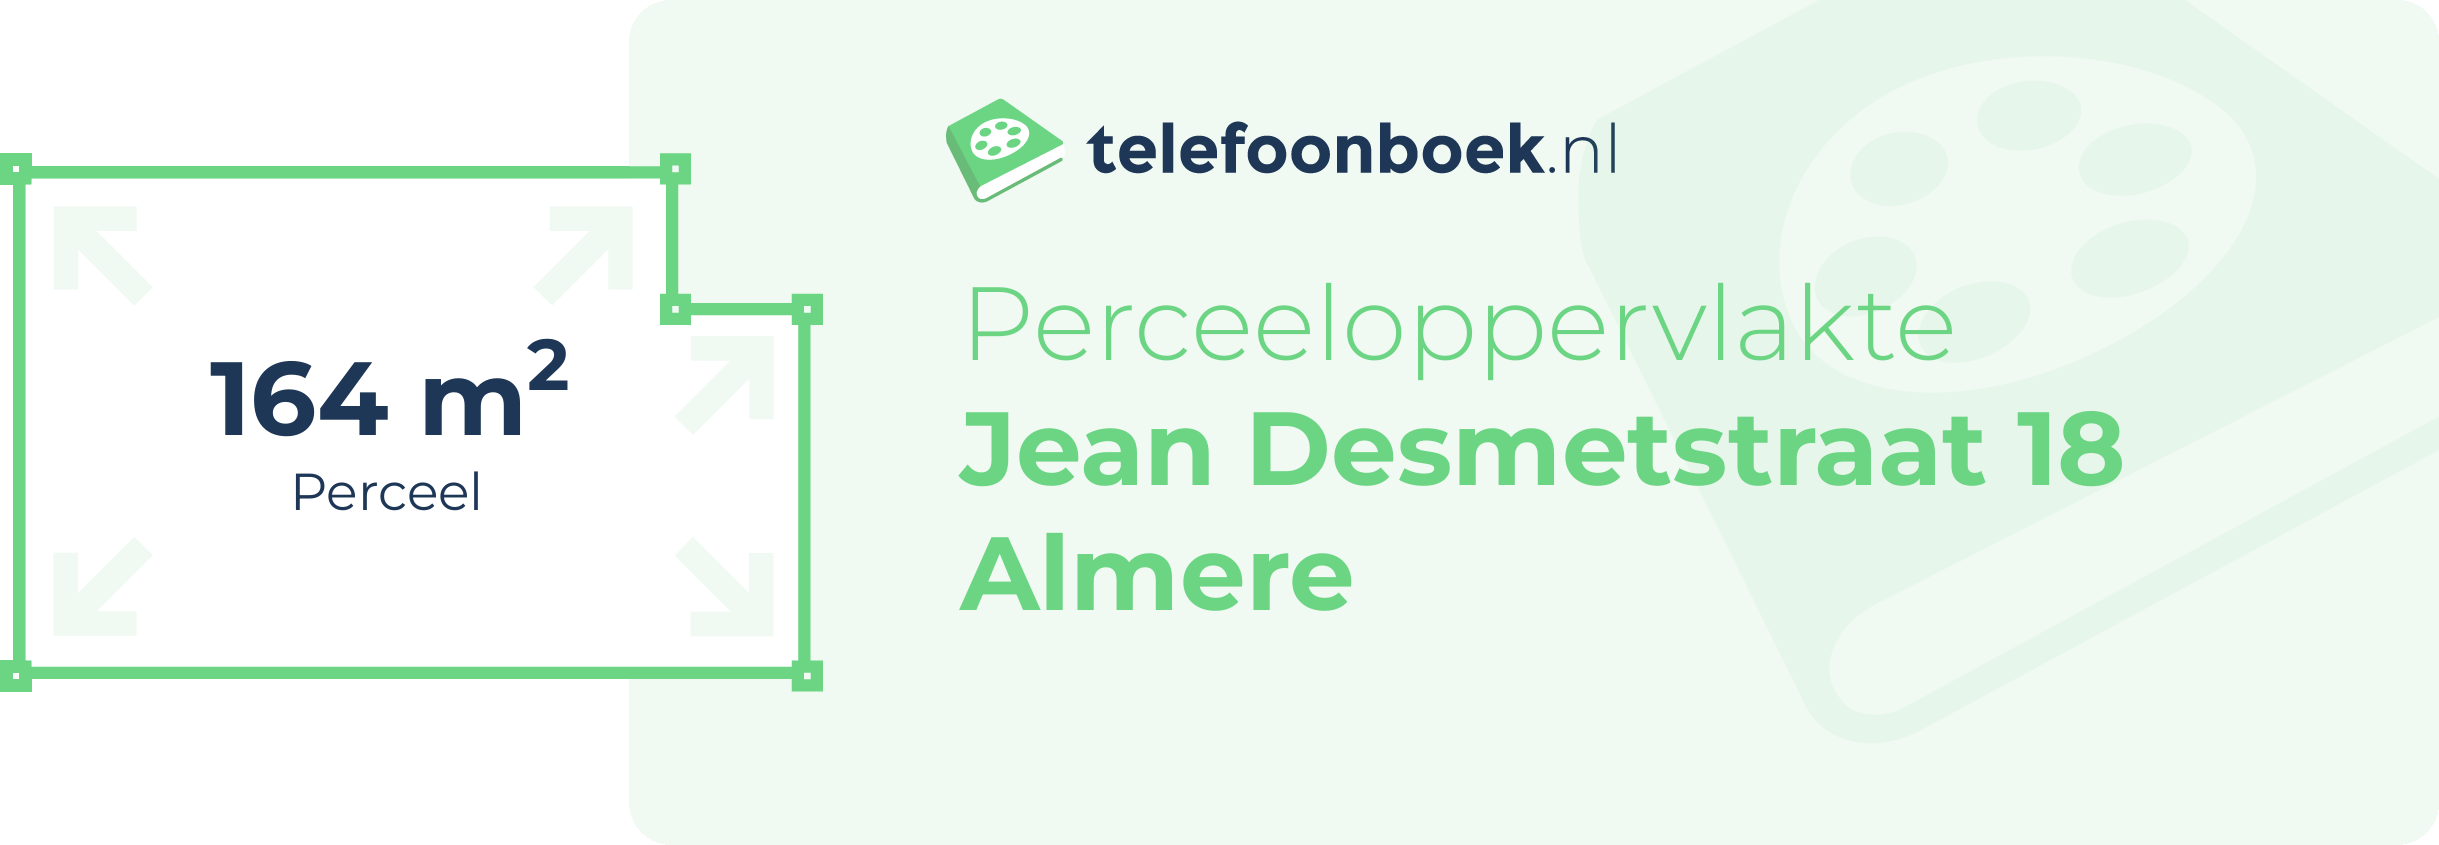 Perceeloppervlakte Jean Desmetstraat 18 Almere